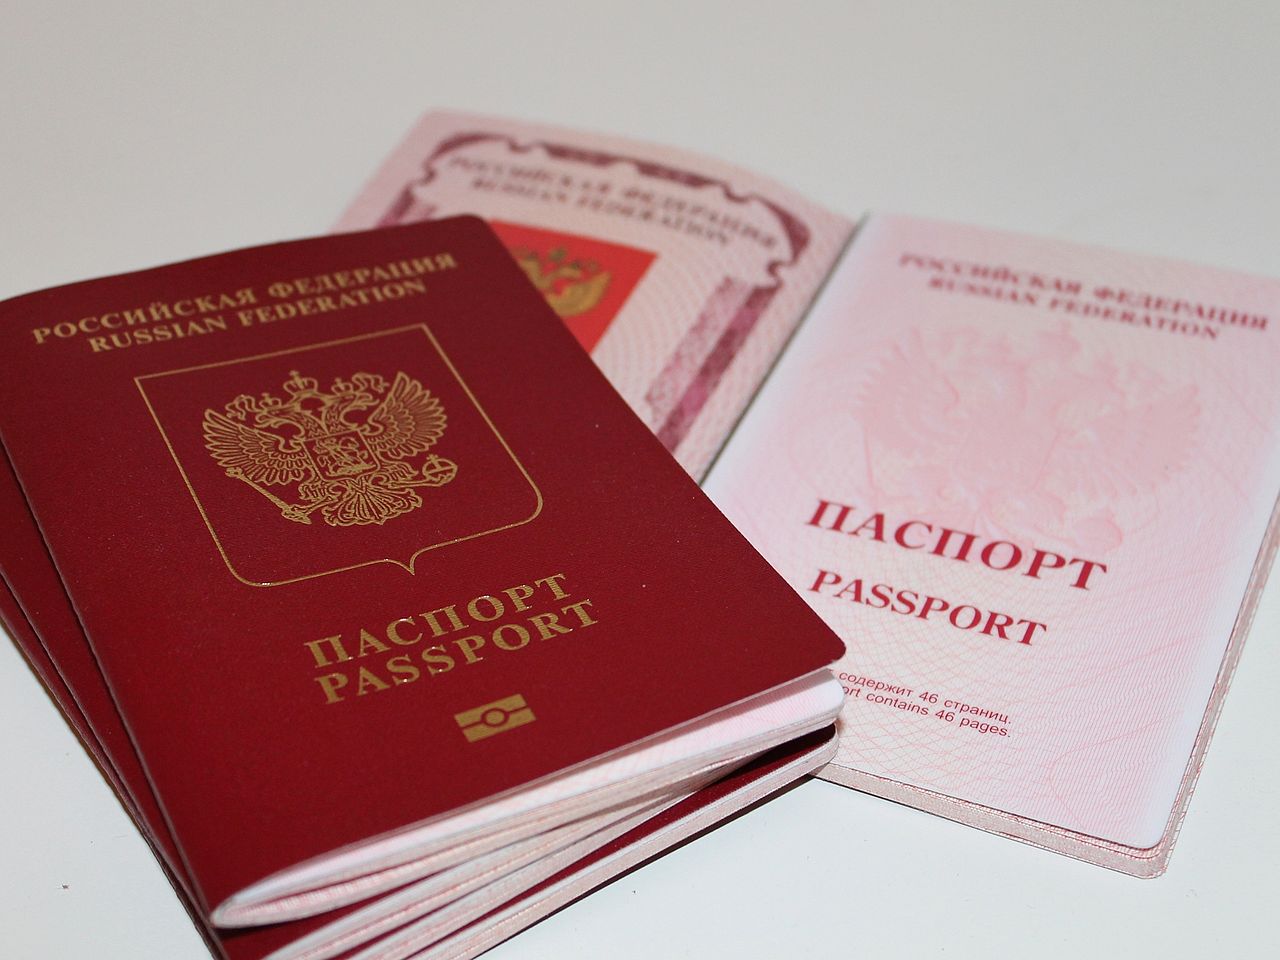 Bazı Rus elçilikleri biyometrik pasaport vermeyi durdurdu!